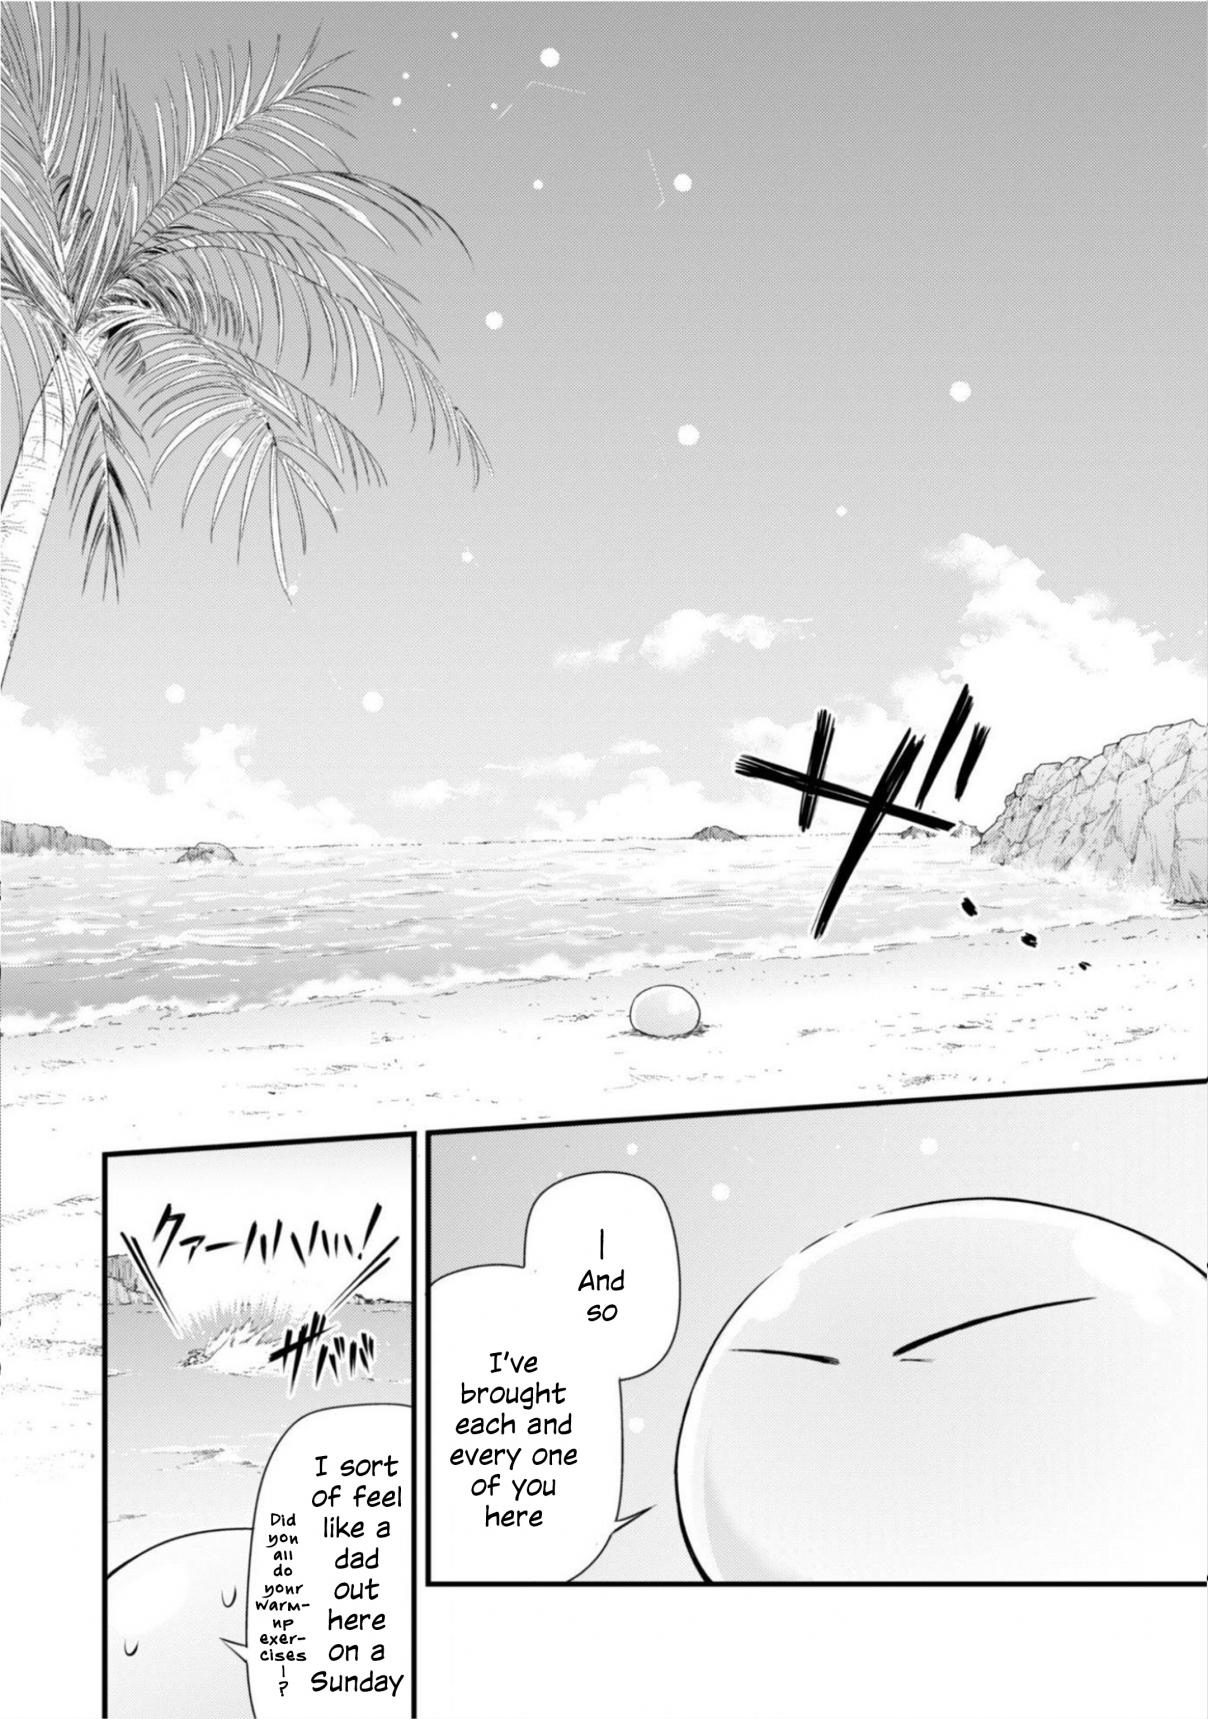 Tensei Shitara Slime Datta Ken: Mamono no Kuni no Arukikata Vol. 4 Ch. 23 Sea Bathing ☆ 3 Stars!!